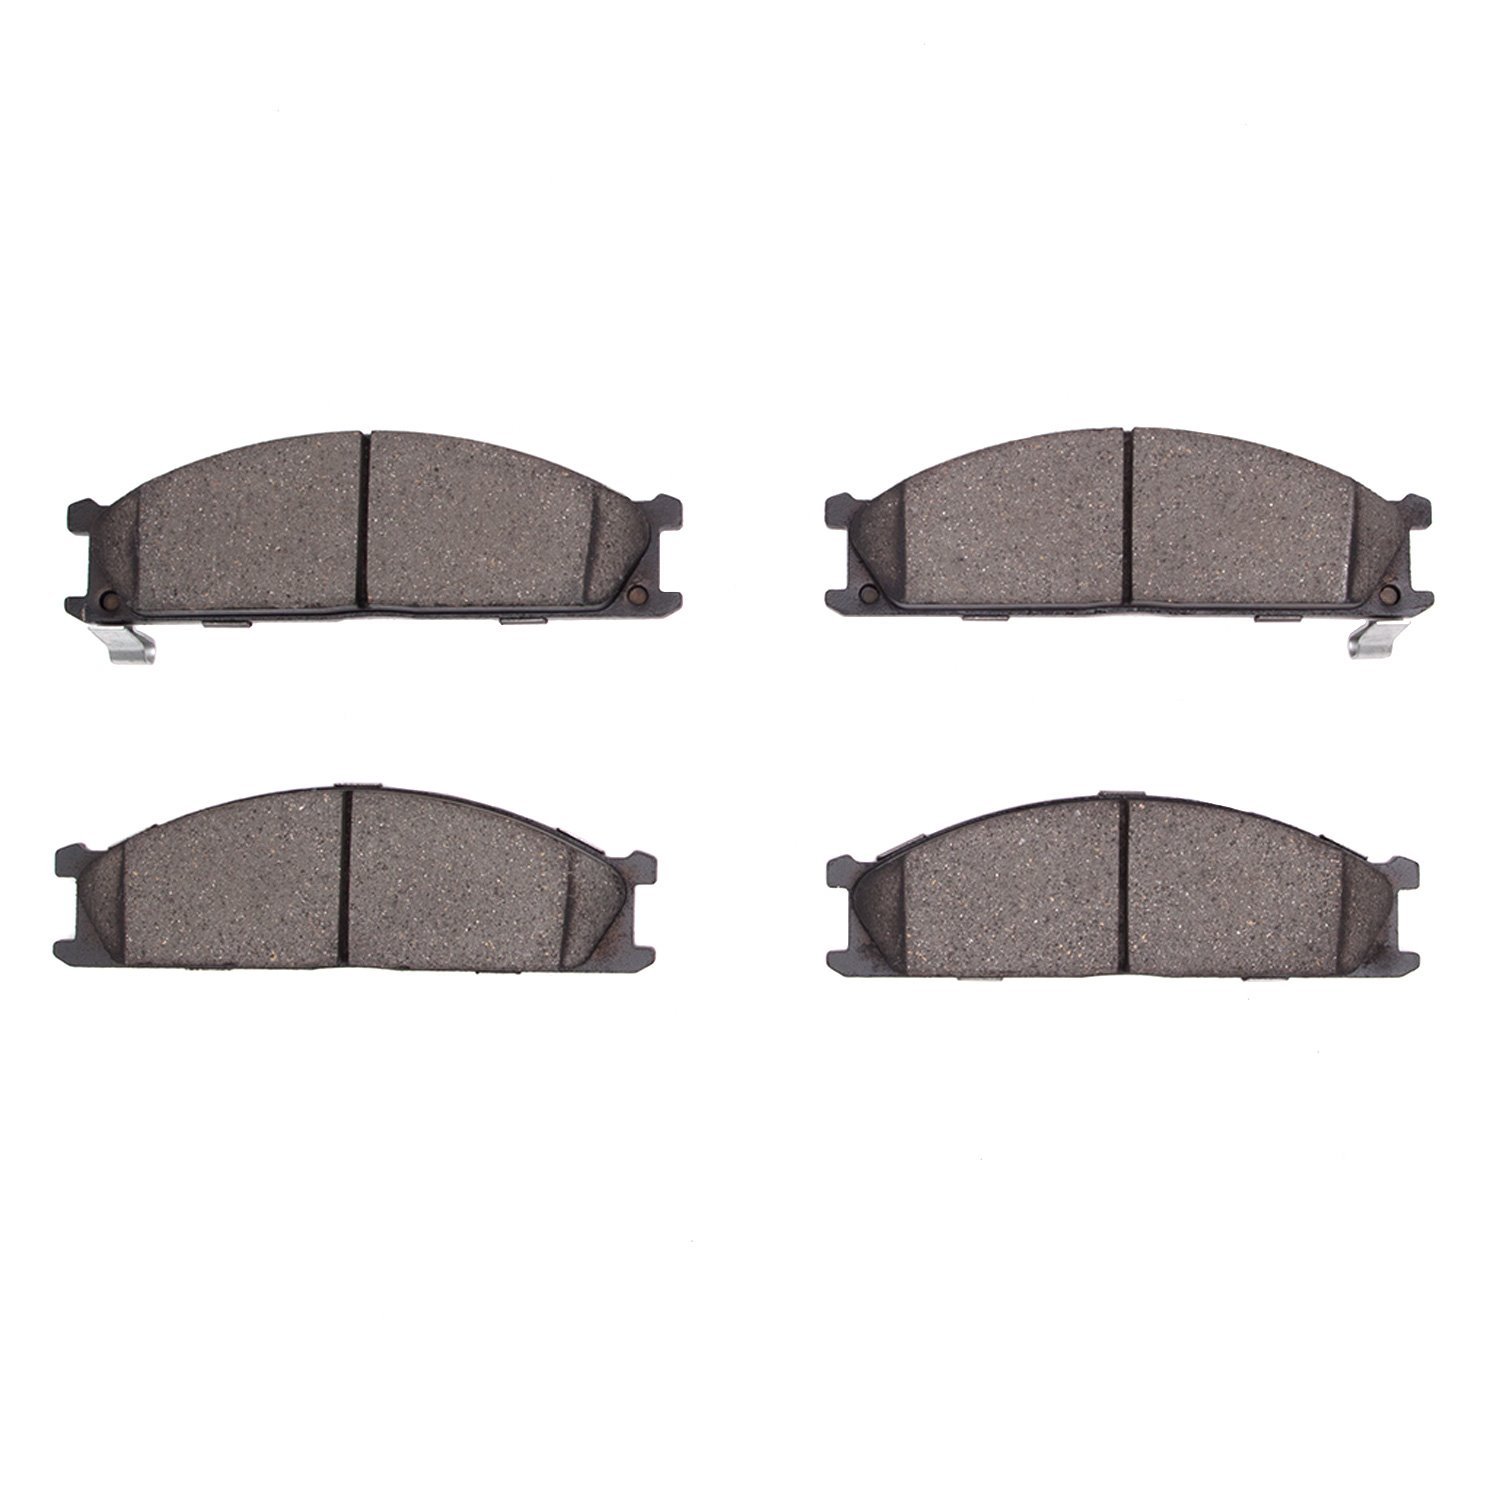 Ceramic Brake Pads, 1985-2015 Fits Multiple Makes/Models, Position: Front